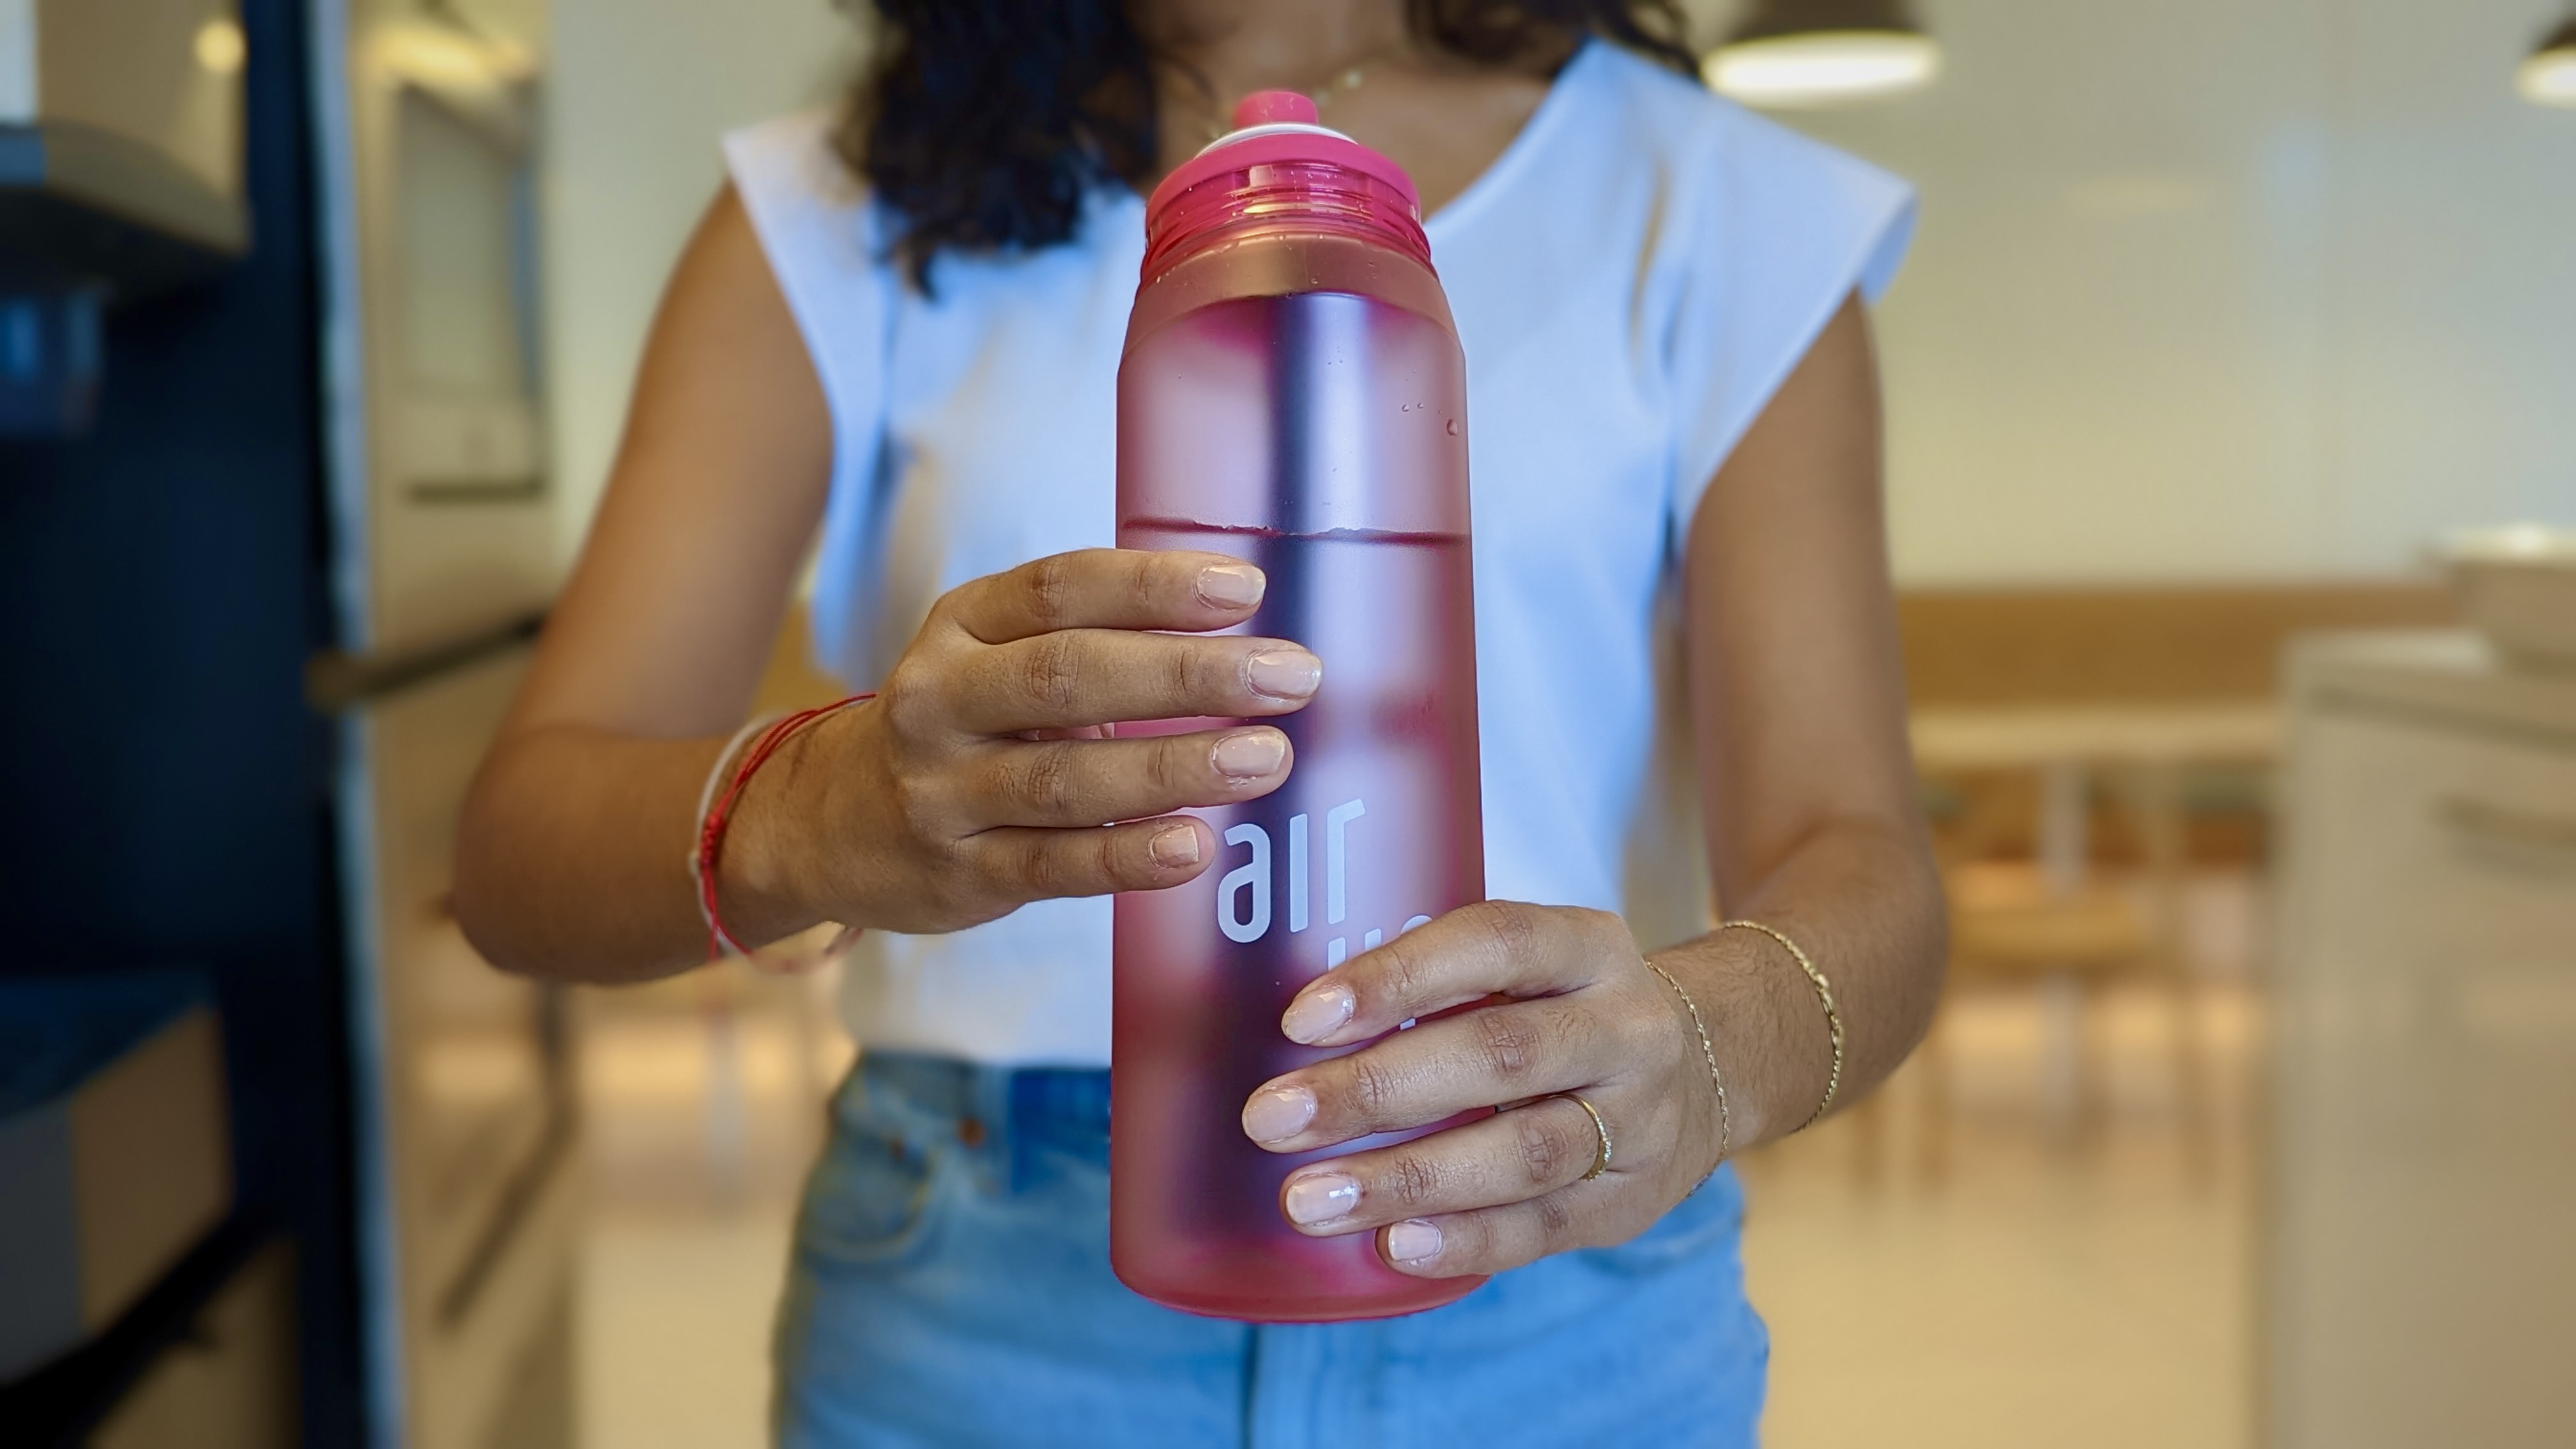 The 7 Best Reusable Water Bottles for School